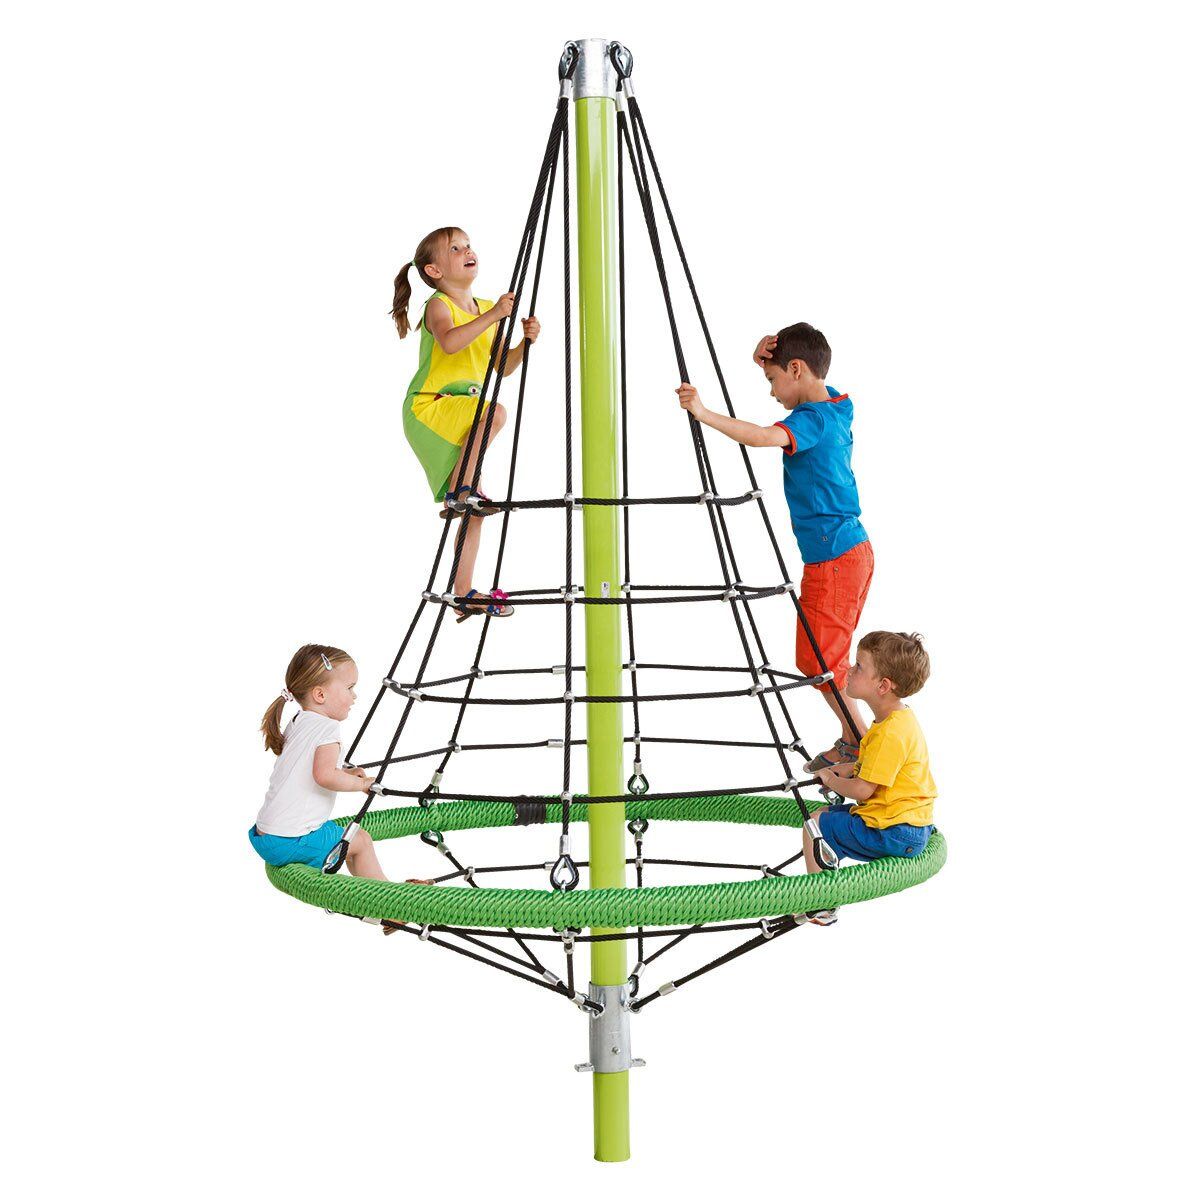 Канат для детских площадок. Пирамида (конструкция для лазания) nat821 (Kompan). Канатный ЛАЗ пирамида. Веревочный игровой комплекс вл 4, канат 16 мм (канатный ЛАЗ)- 1 шт. Веревочный комплекс для детей.